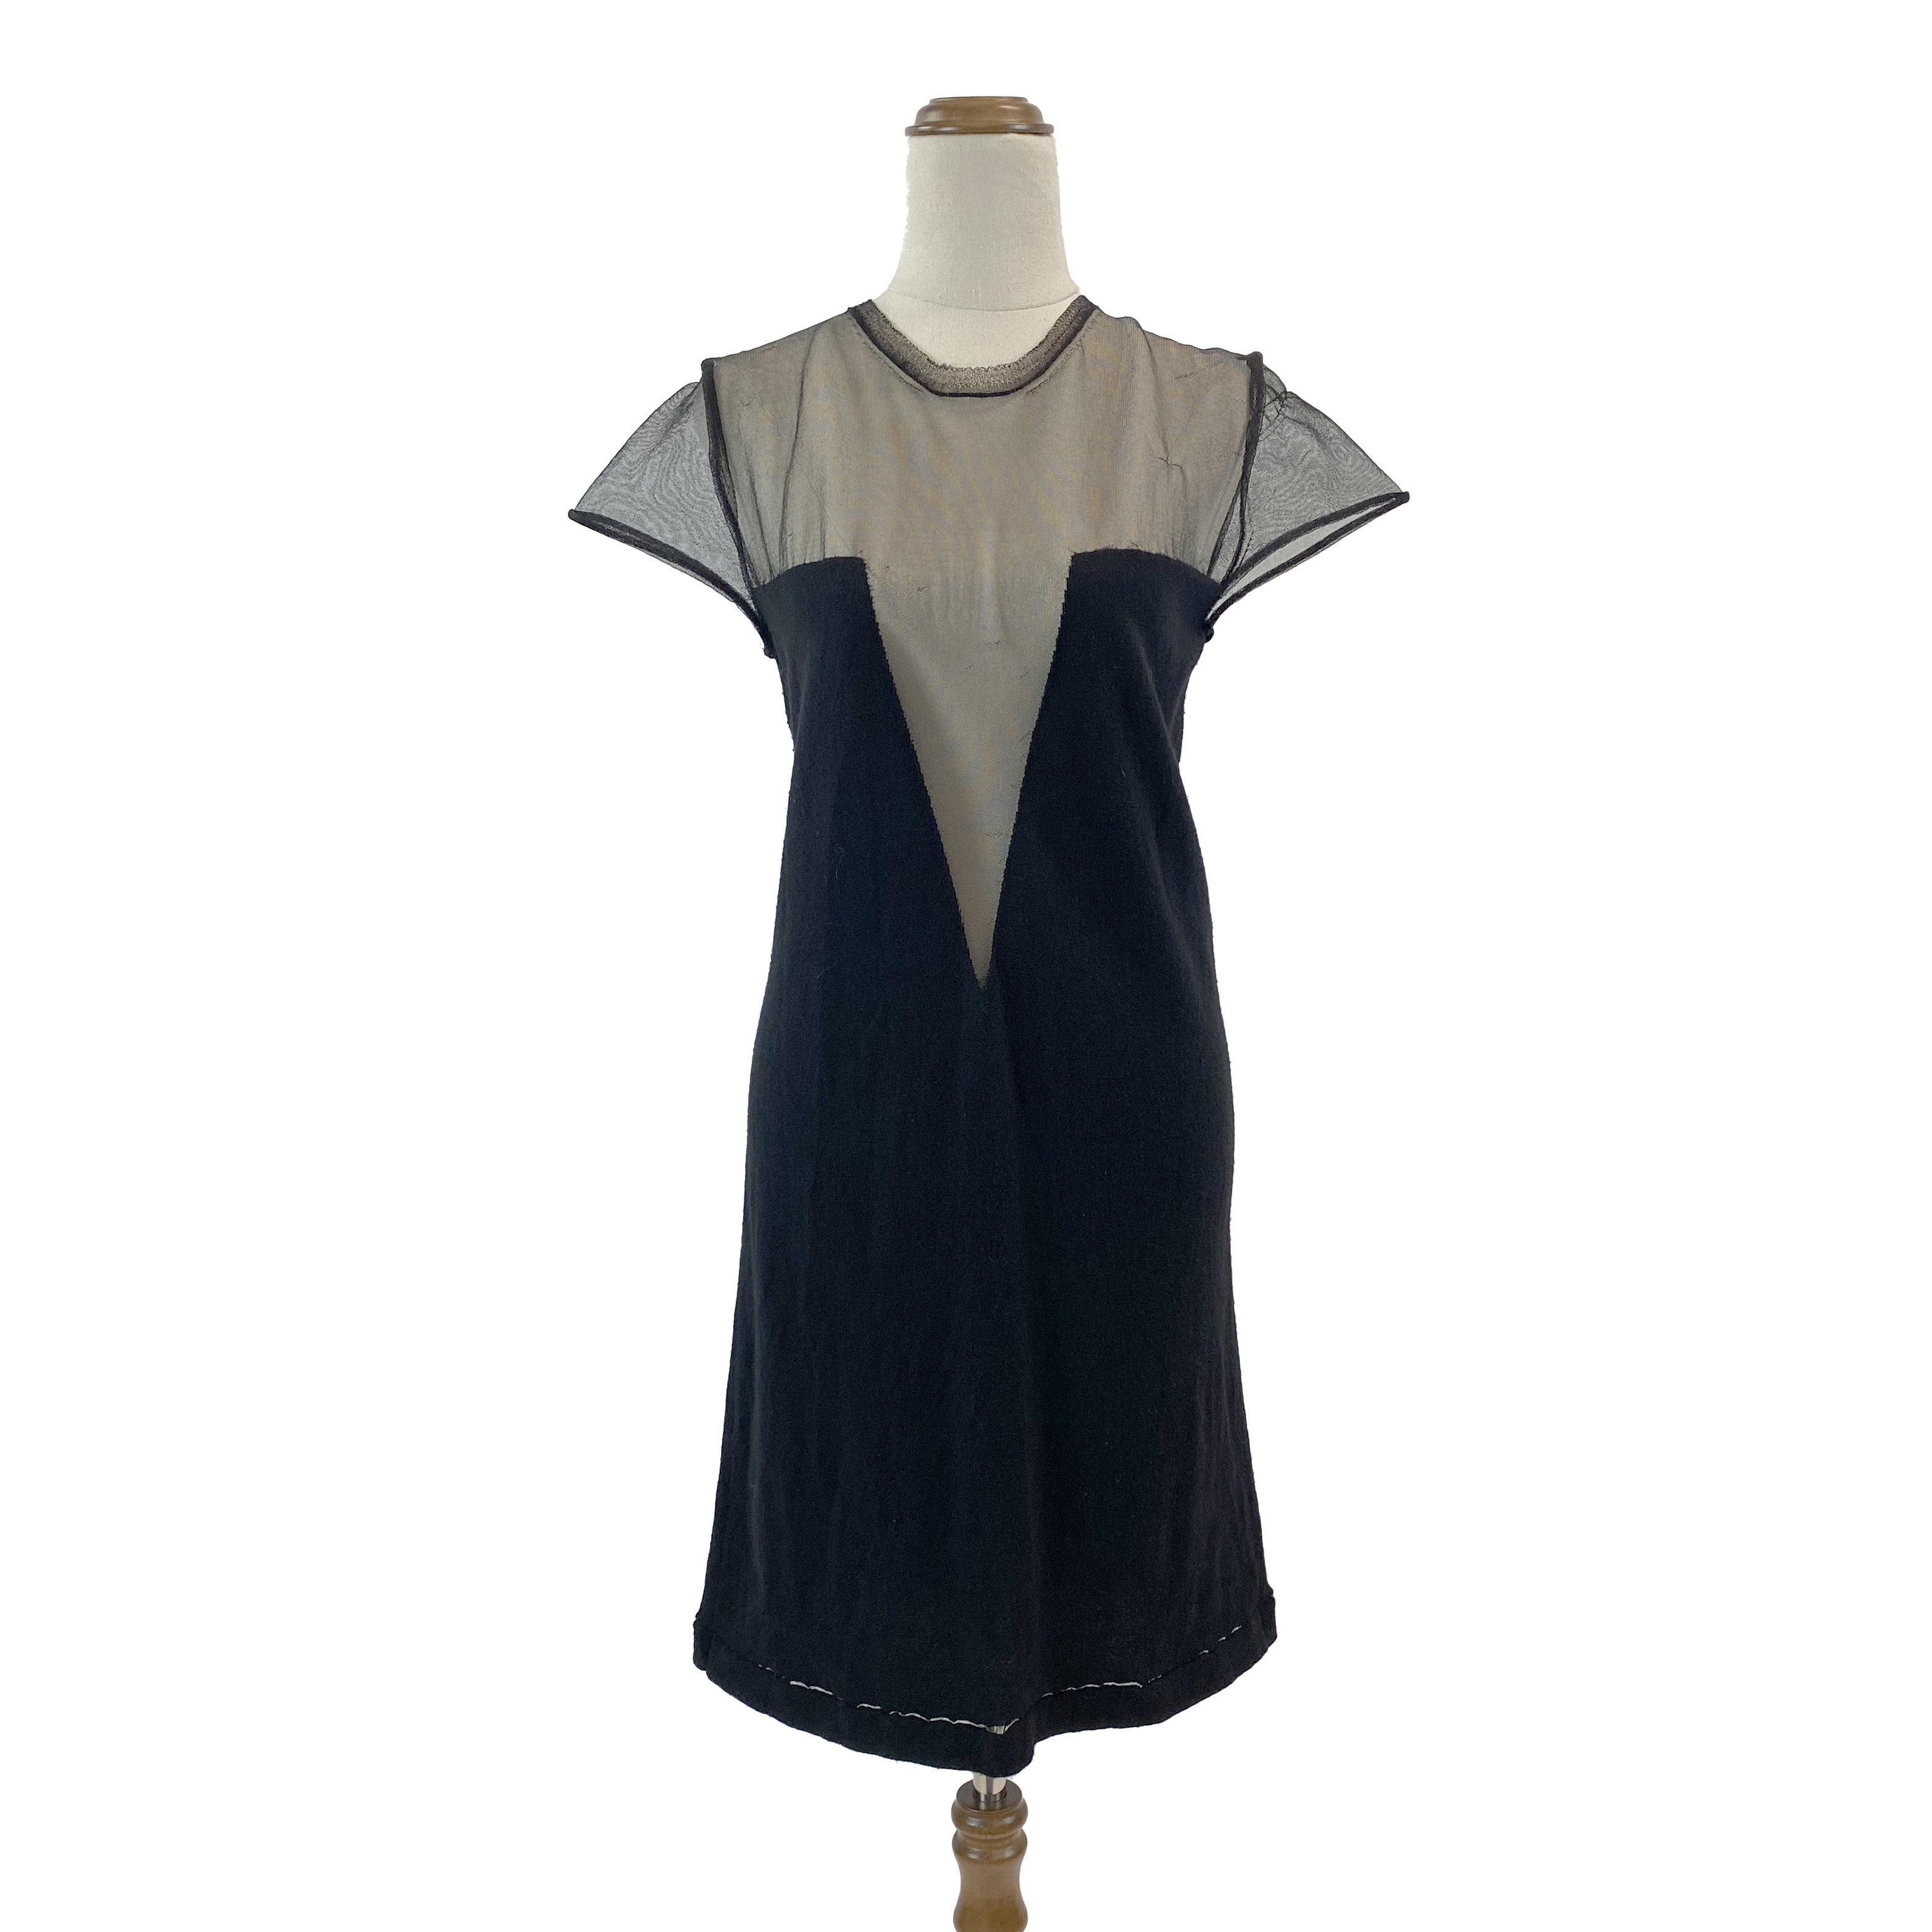 Stella McCartney Wool/Cashmere Dress